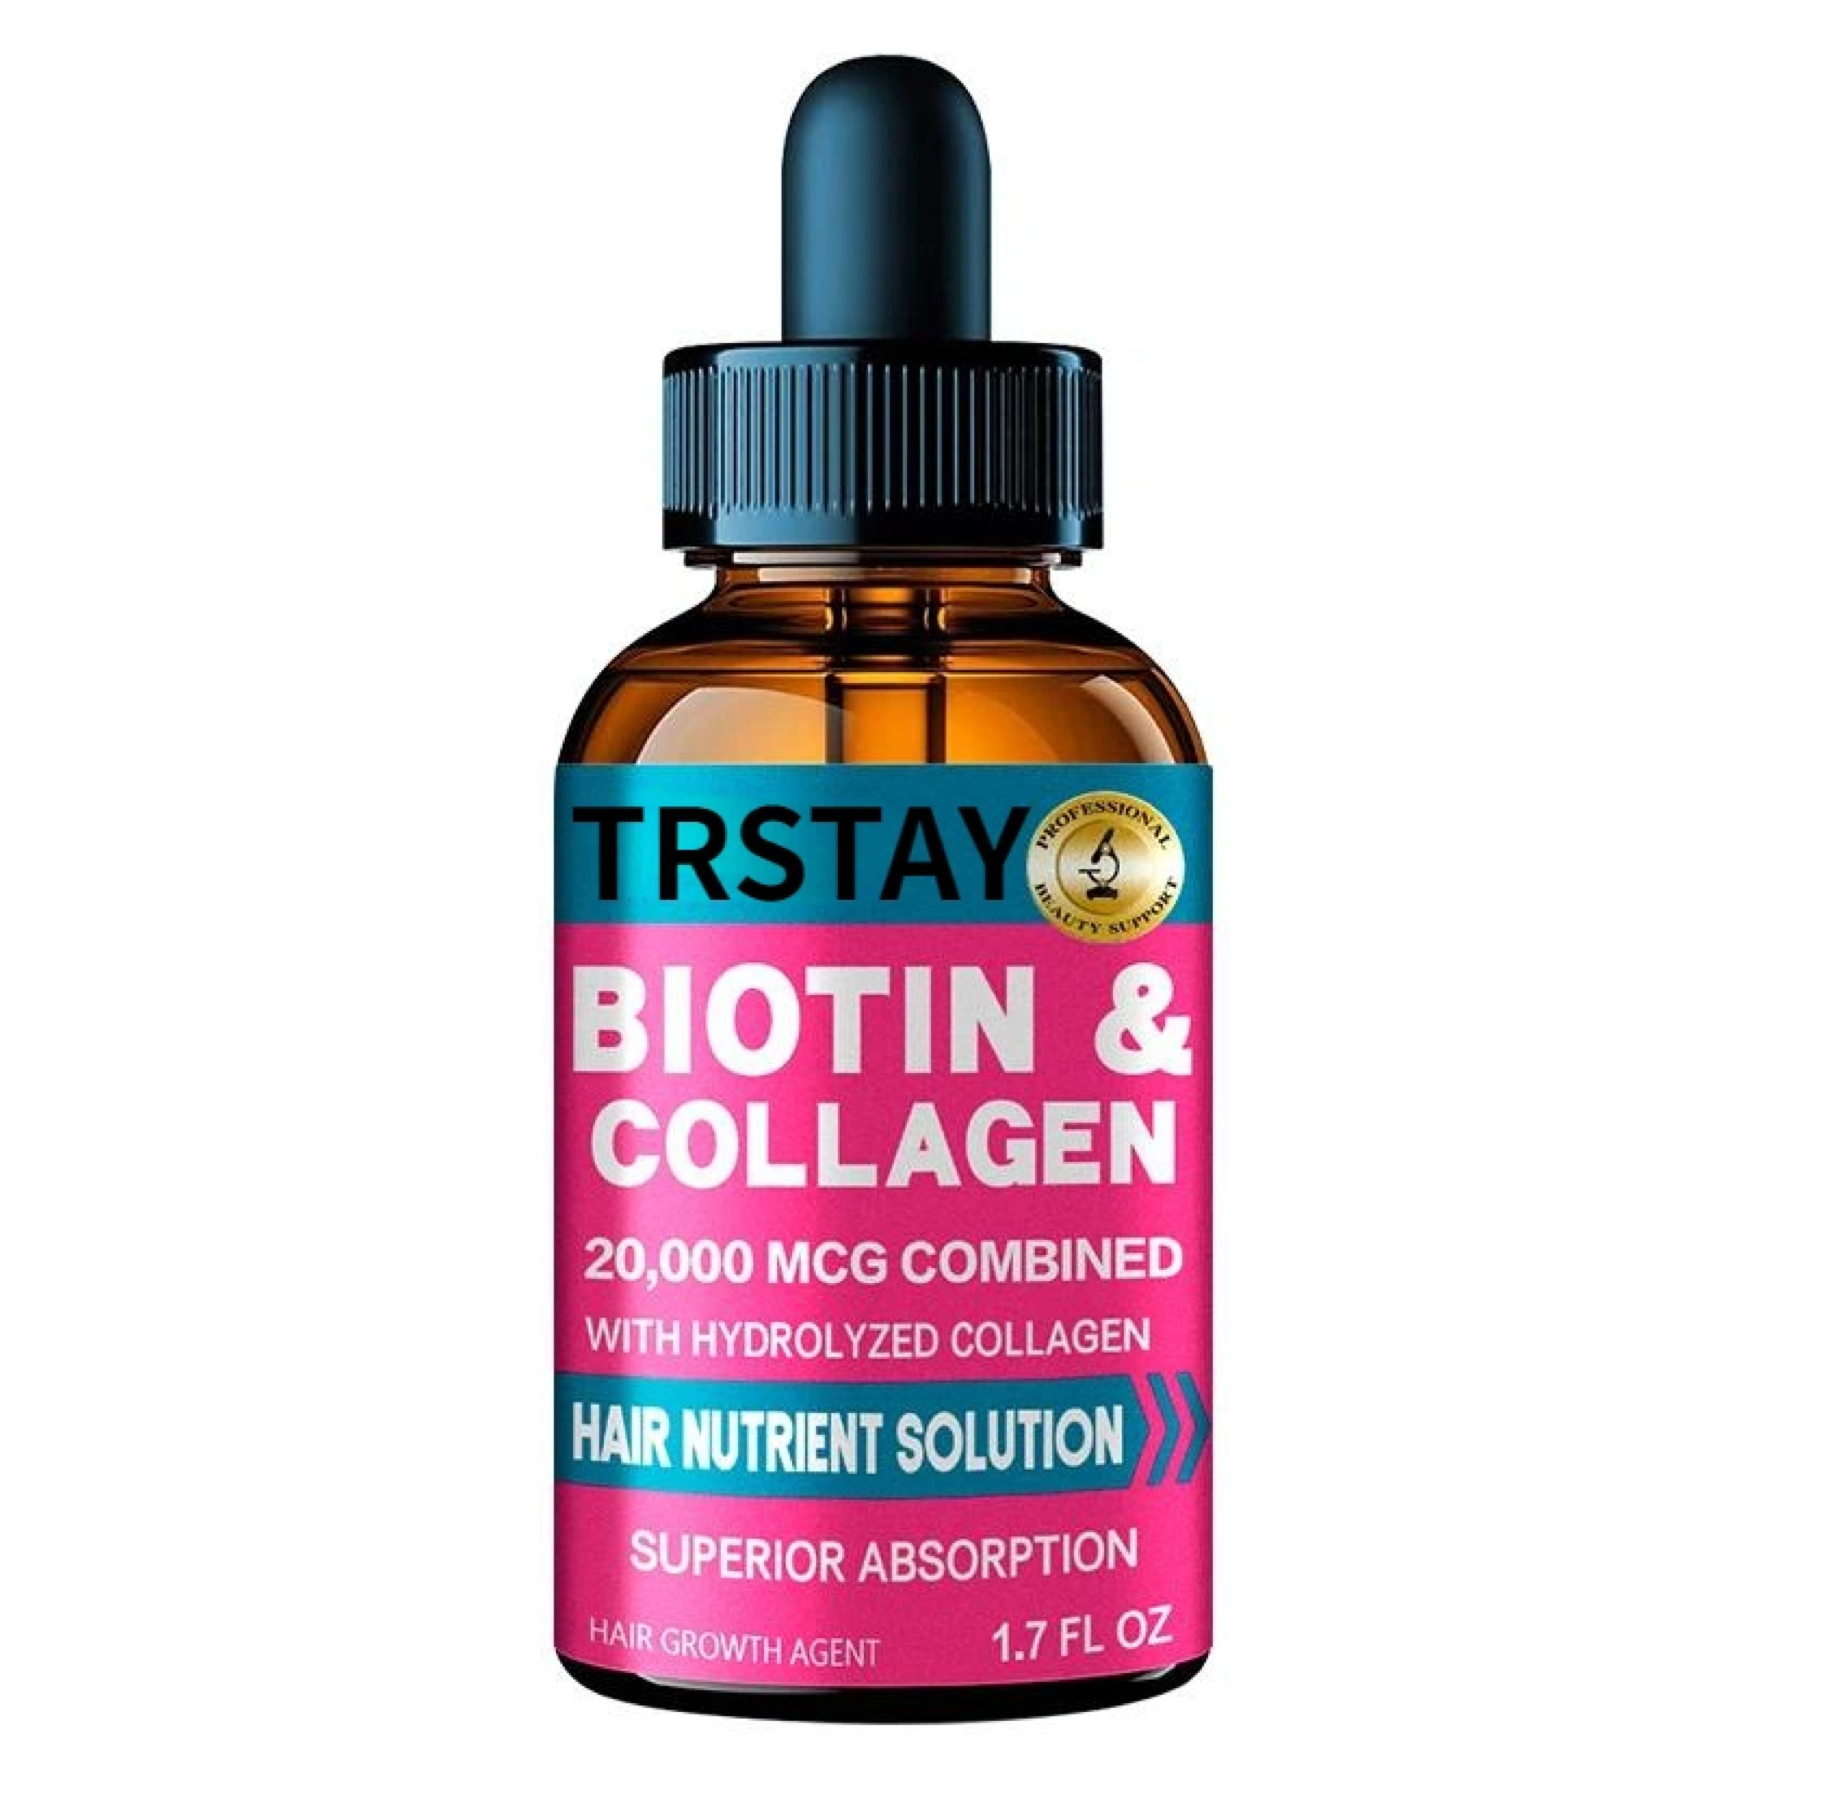 Trstay Biotin & Collagen Hair Nutrient Solution Serum Oil 50ml